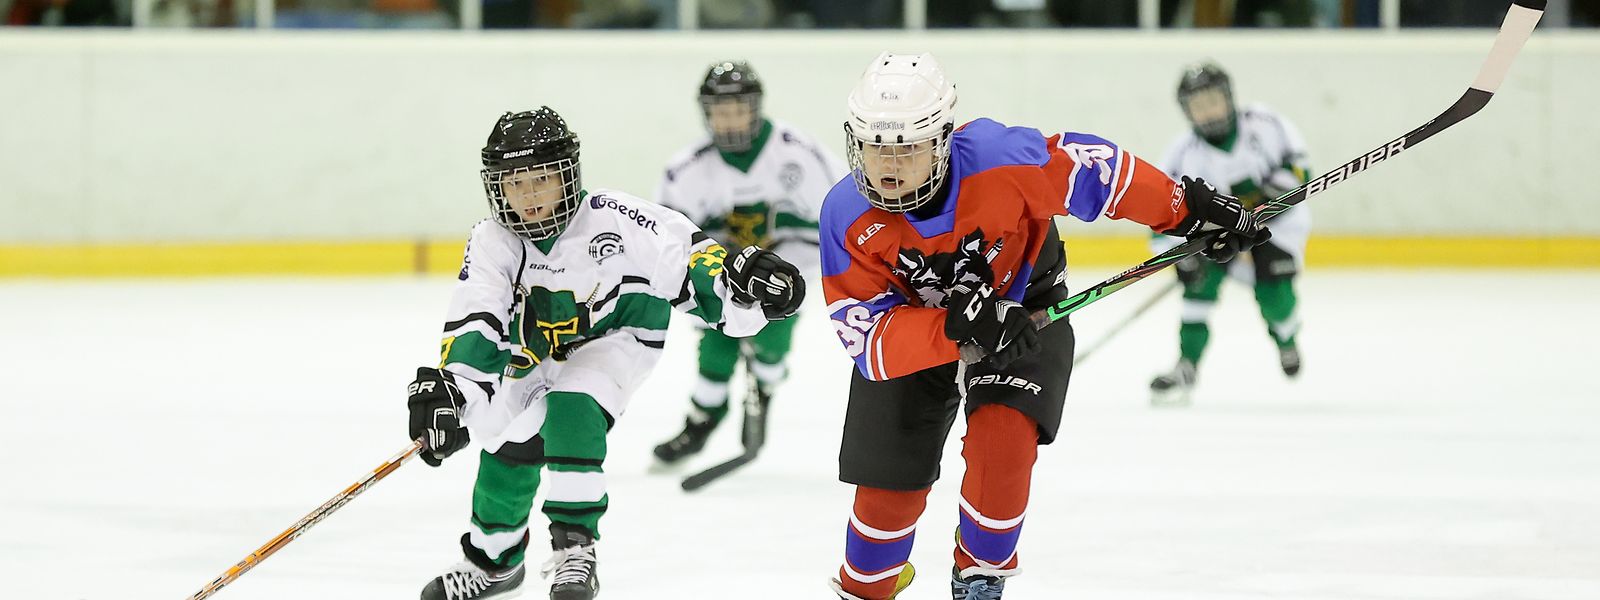 Mittlerweile wollen so viele Jugendliche Eishockey spielen, dass die Vereine an die Grenzen ihrer Kapazitäten stoßen.